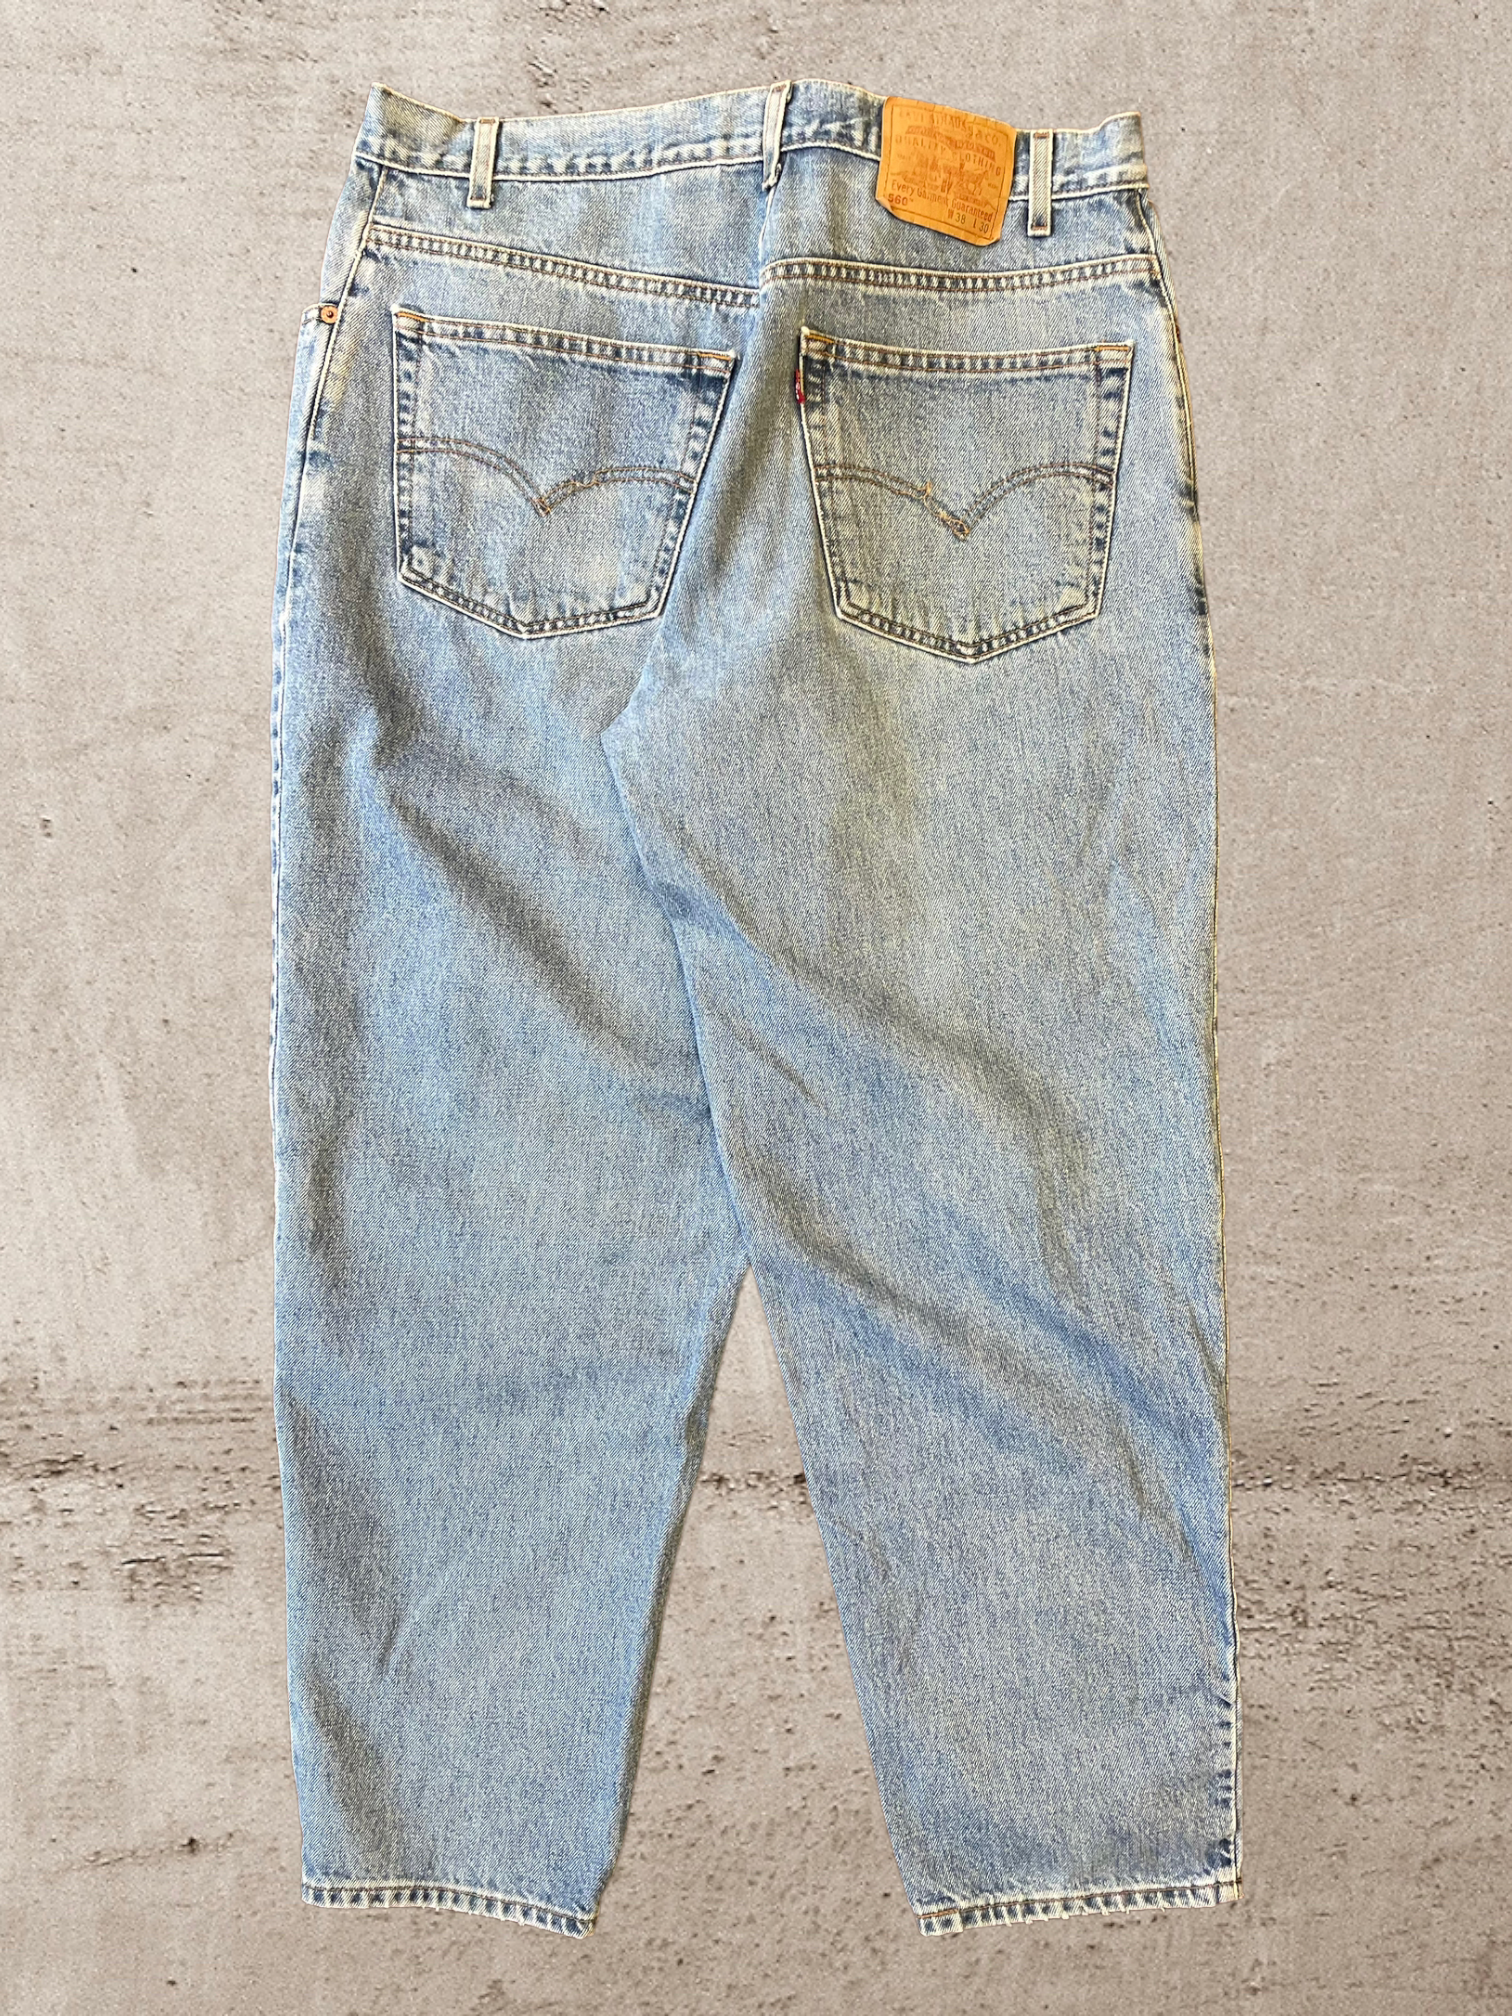 90s Levi 560 Loose Fit Jeans - 36x30